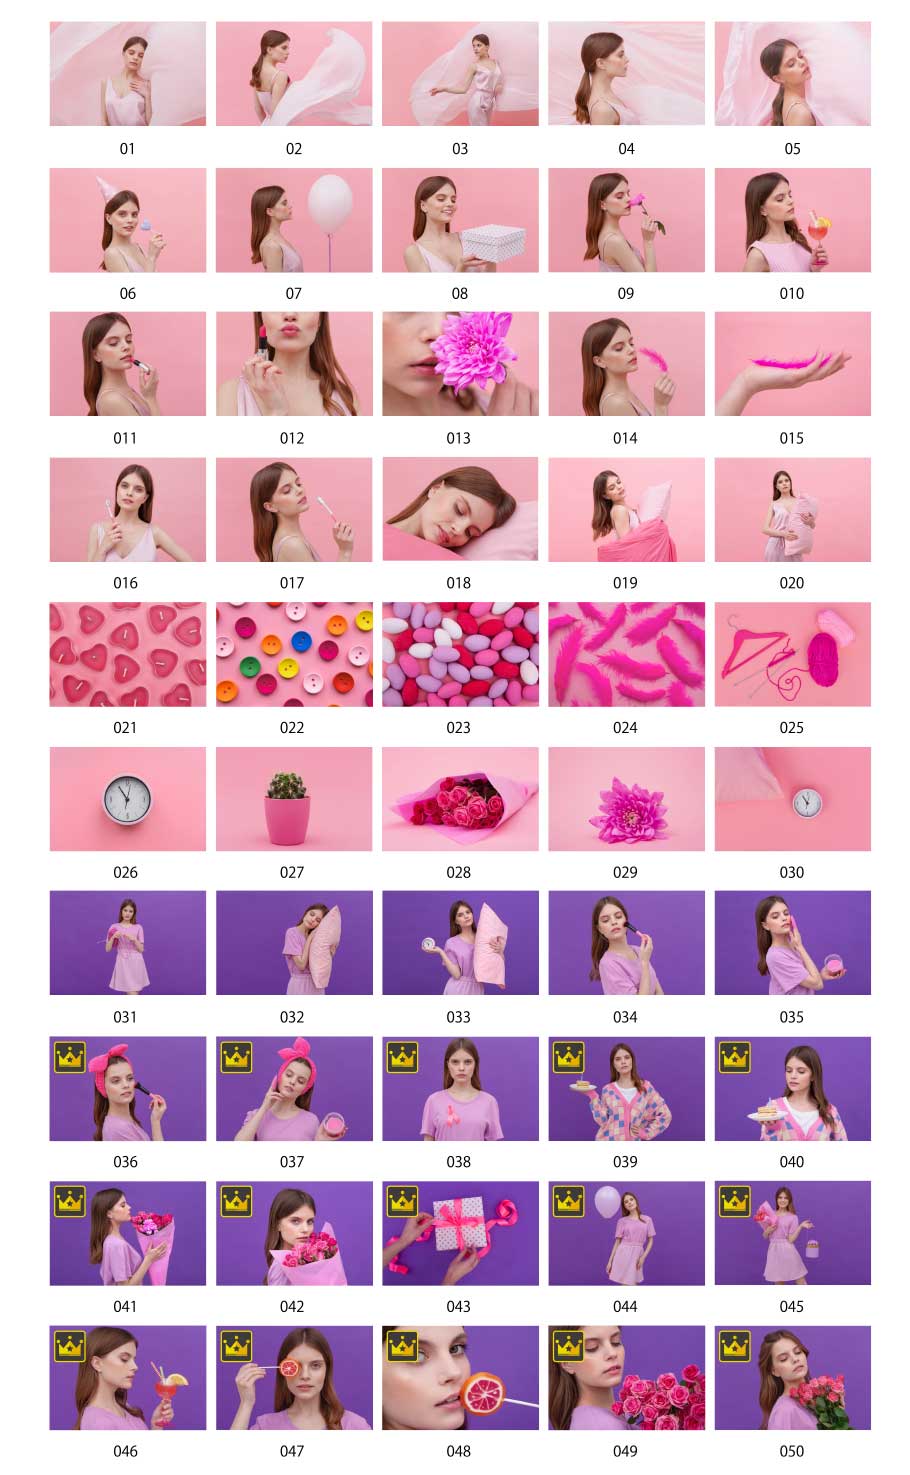 ภาพถ่ายภาพสีชมพูและสีม่วง